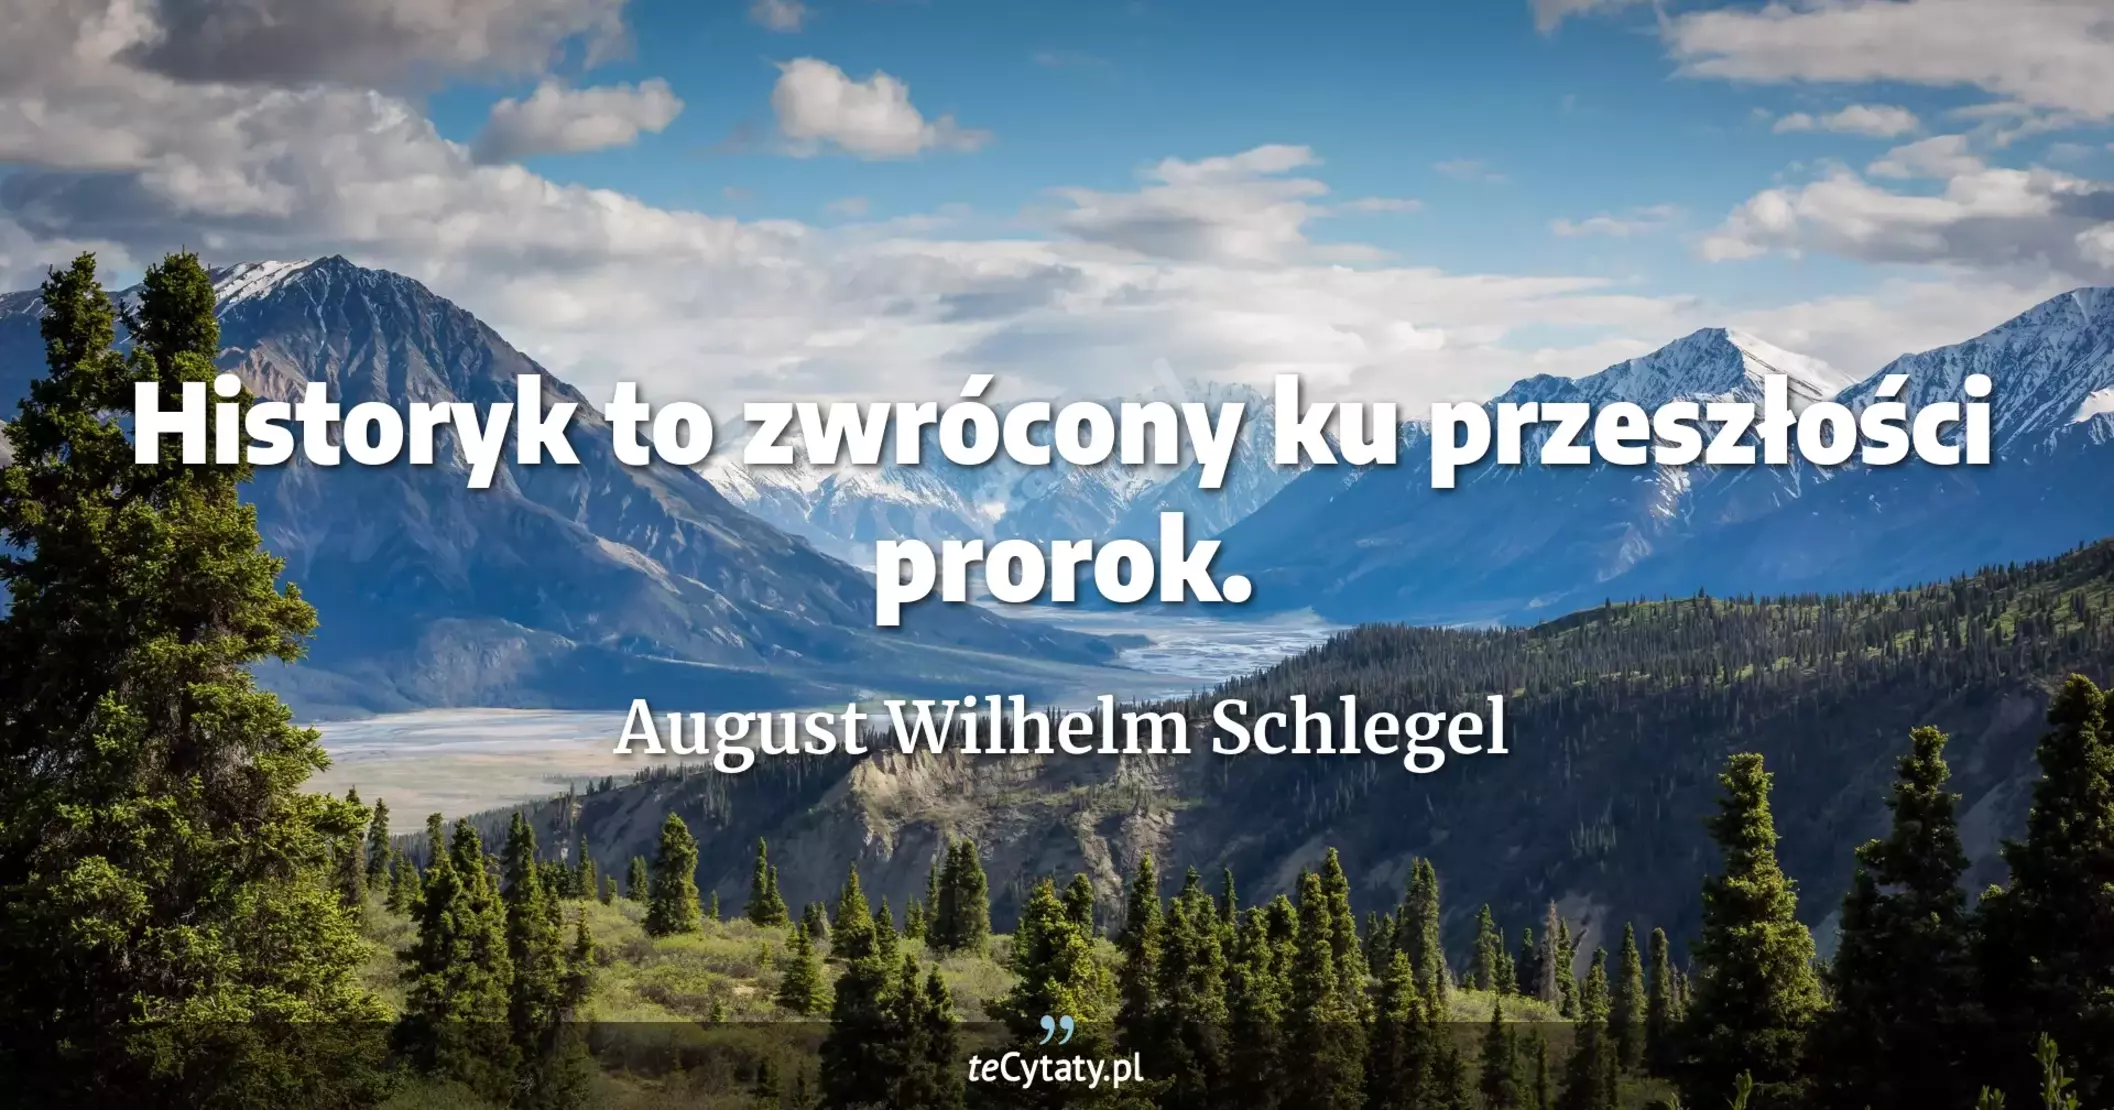 Historyk to zwrócony ku przeszłości prorok. - August Wilhelm Schlegel